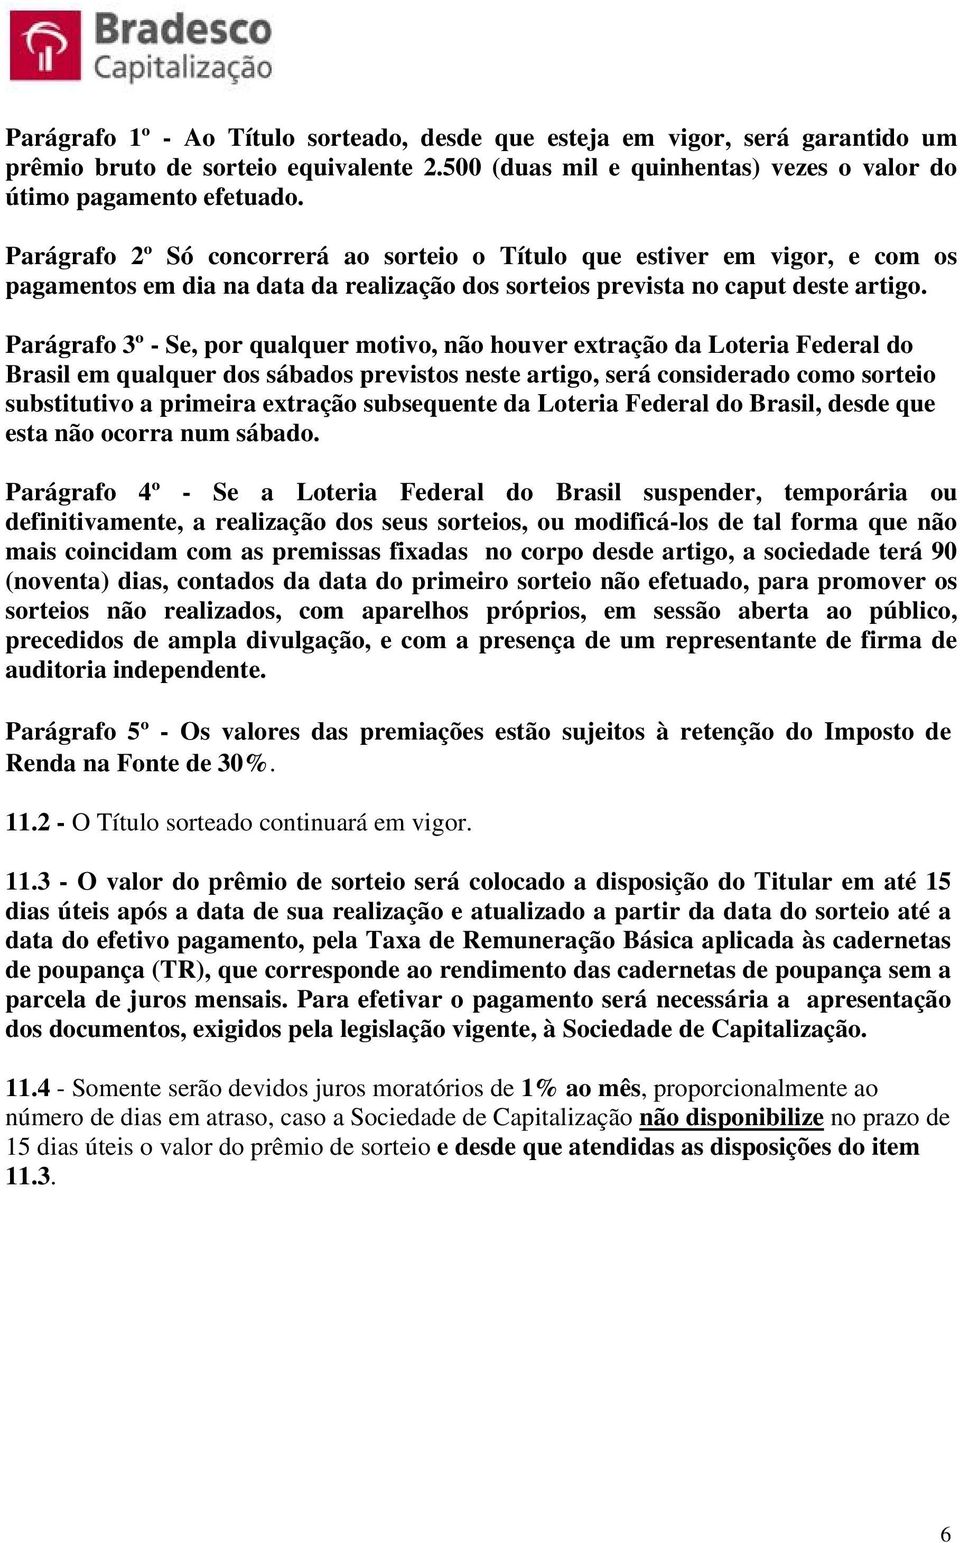 Parágrafo 3º - Se, por qualquer motivo, não houver extração da Loteria Federal do Brasil em qualquer dos sábados previstos neste artigo, será considerado como sorteio substitutivo a primeira extração